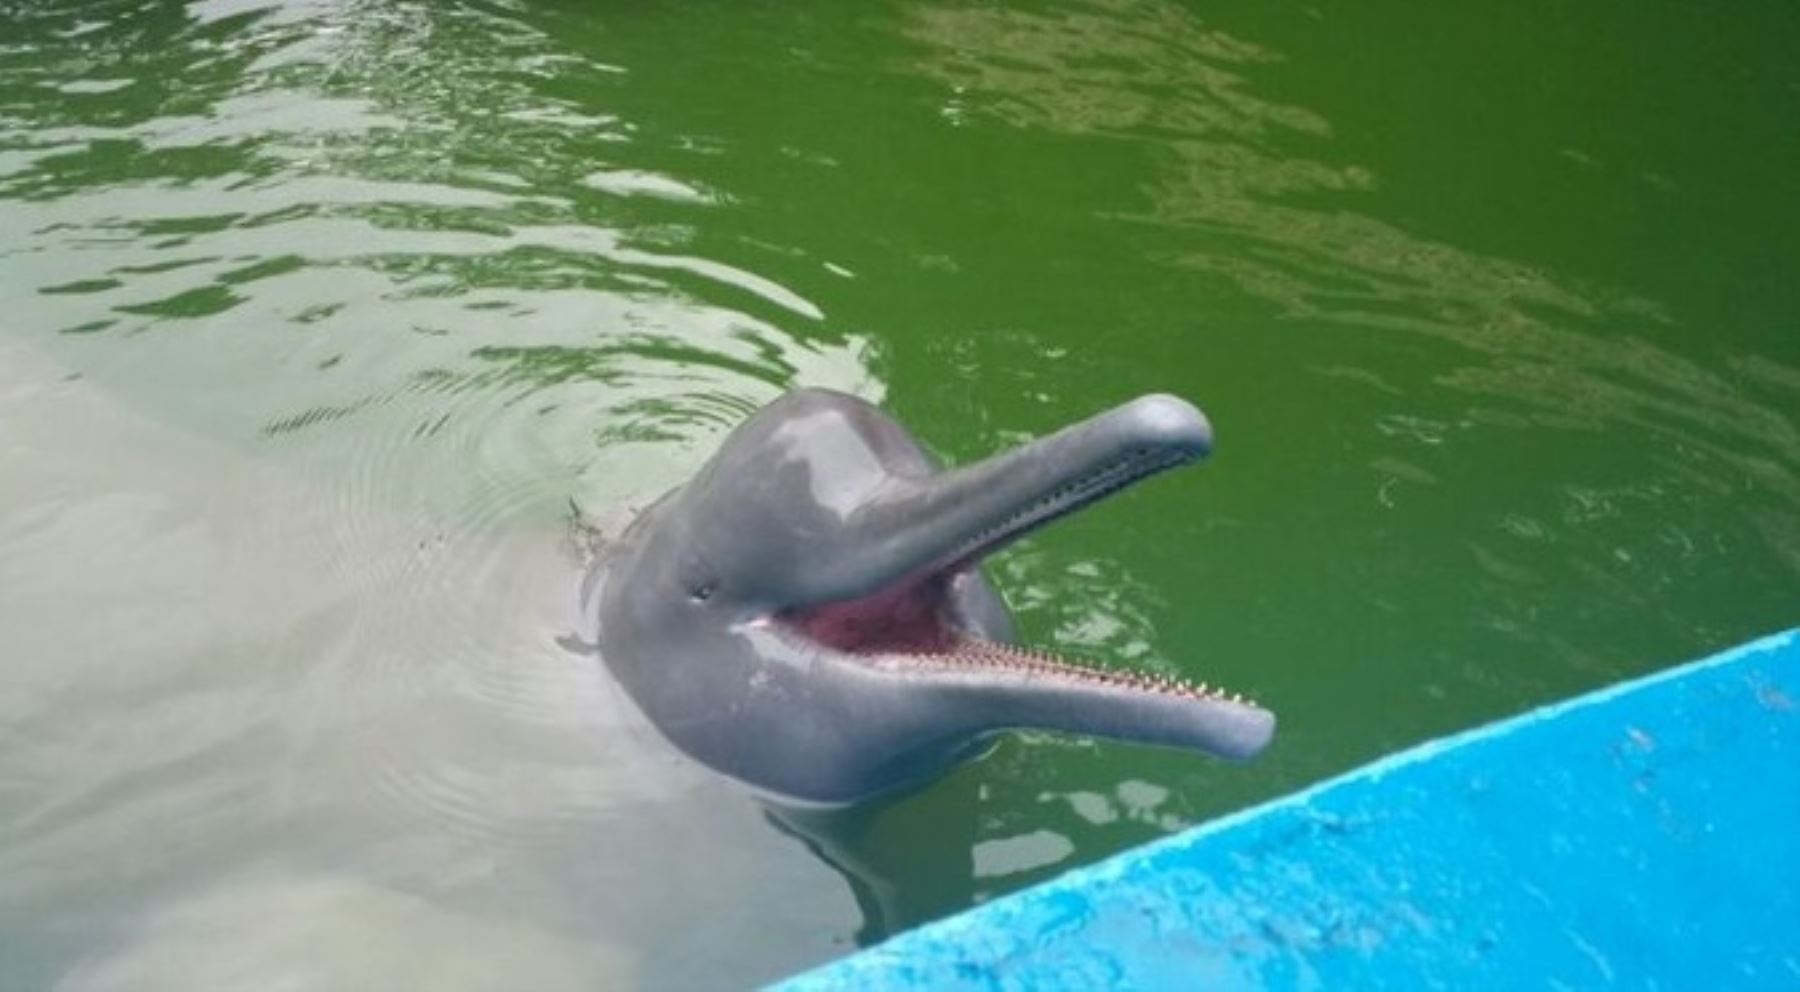 El gobierno regional de Loreto autorizó el traslado, en un plazo no mayor de 120 días, del delfín rosado Huayrurín a la laguna natural de Quistococha, a fin de garantizar las condiciones adecuadas que permitan la preservación de este cetáceo fluvial, informó el gobernador Fernando Meléndez.